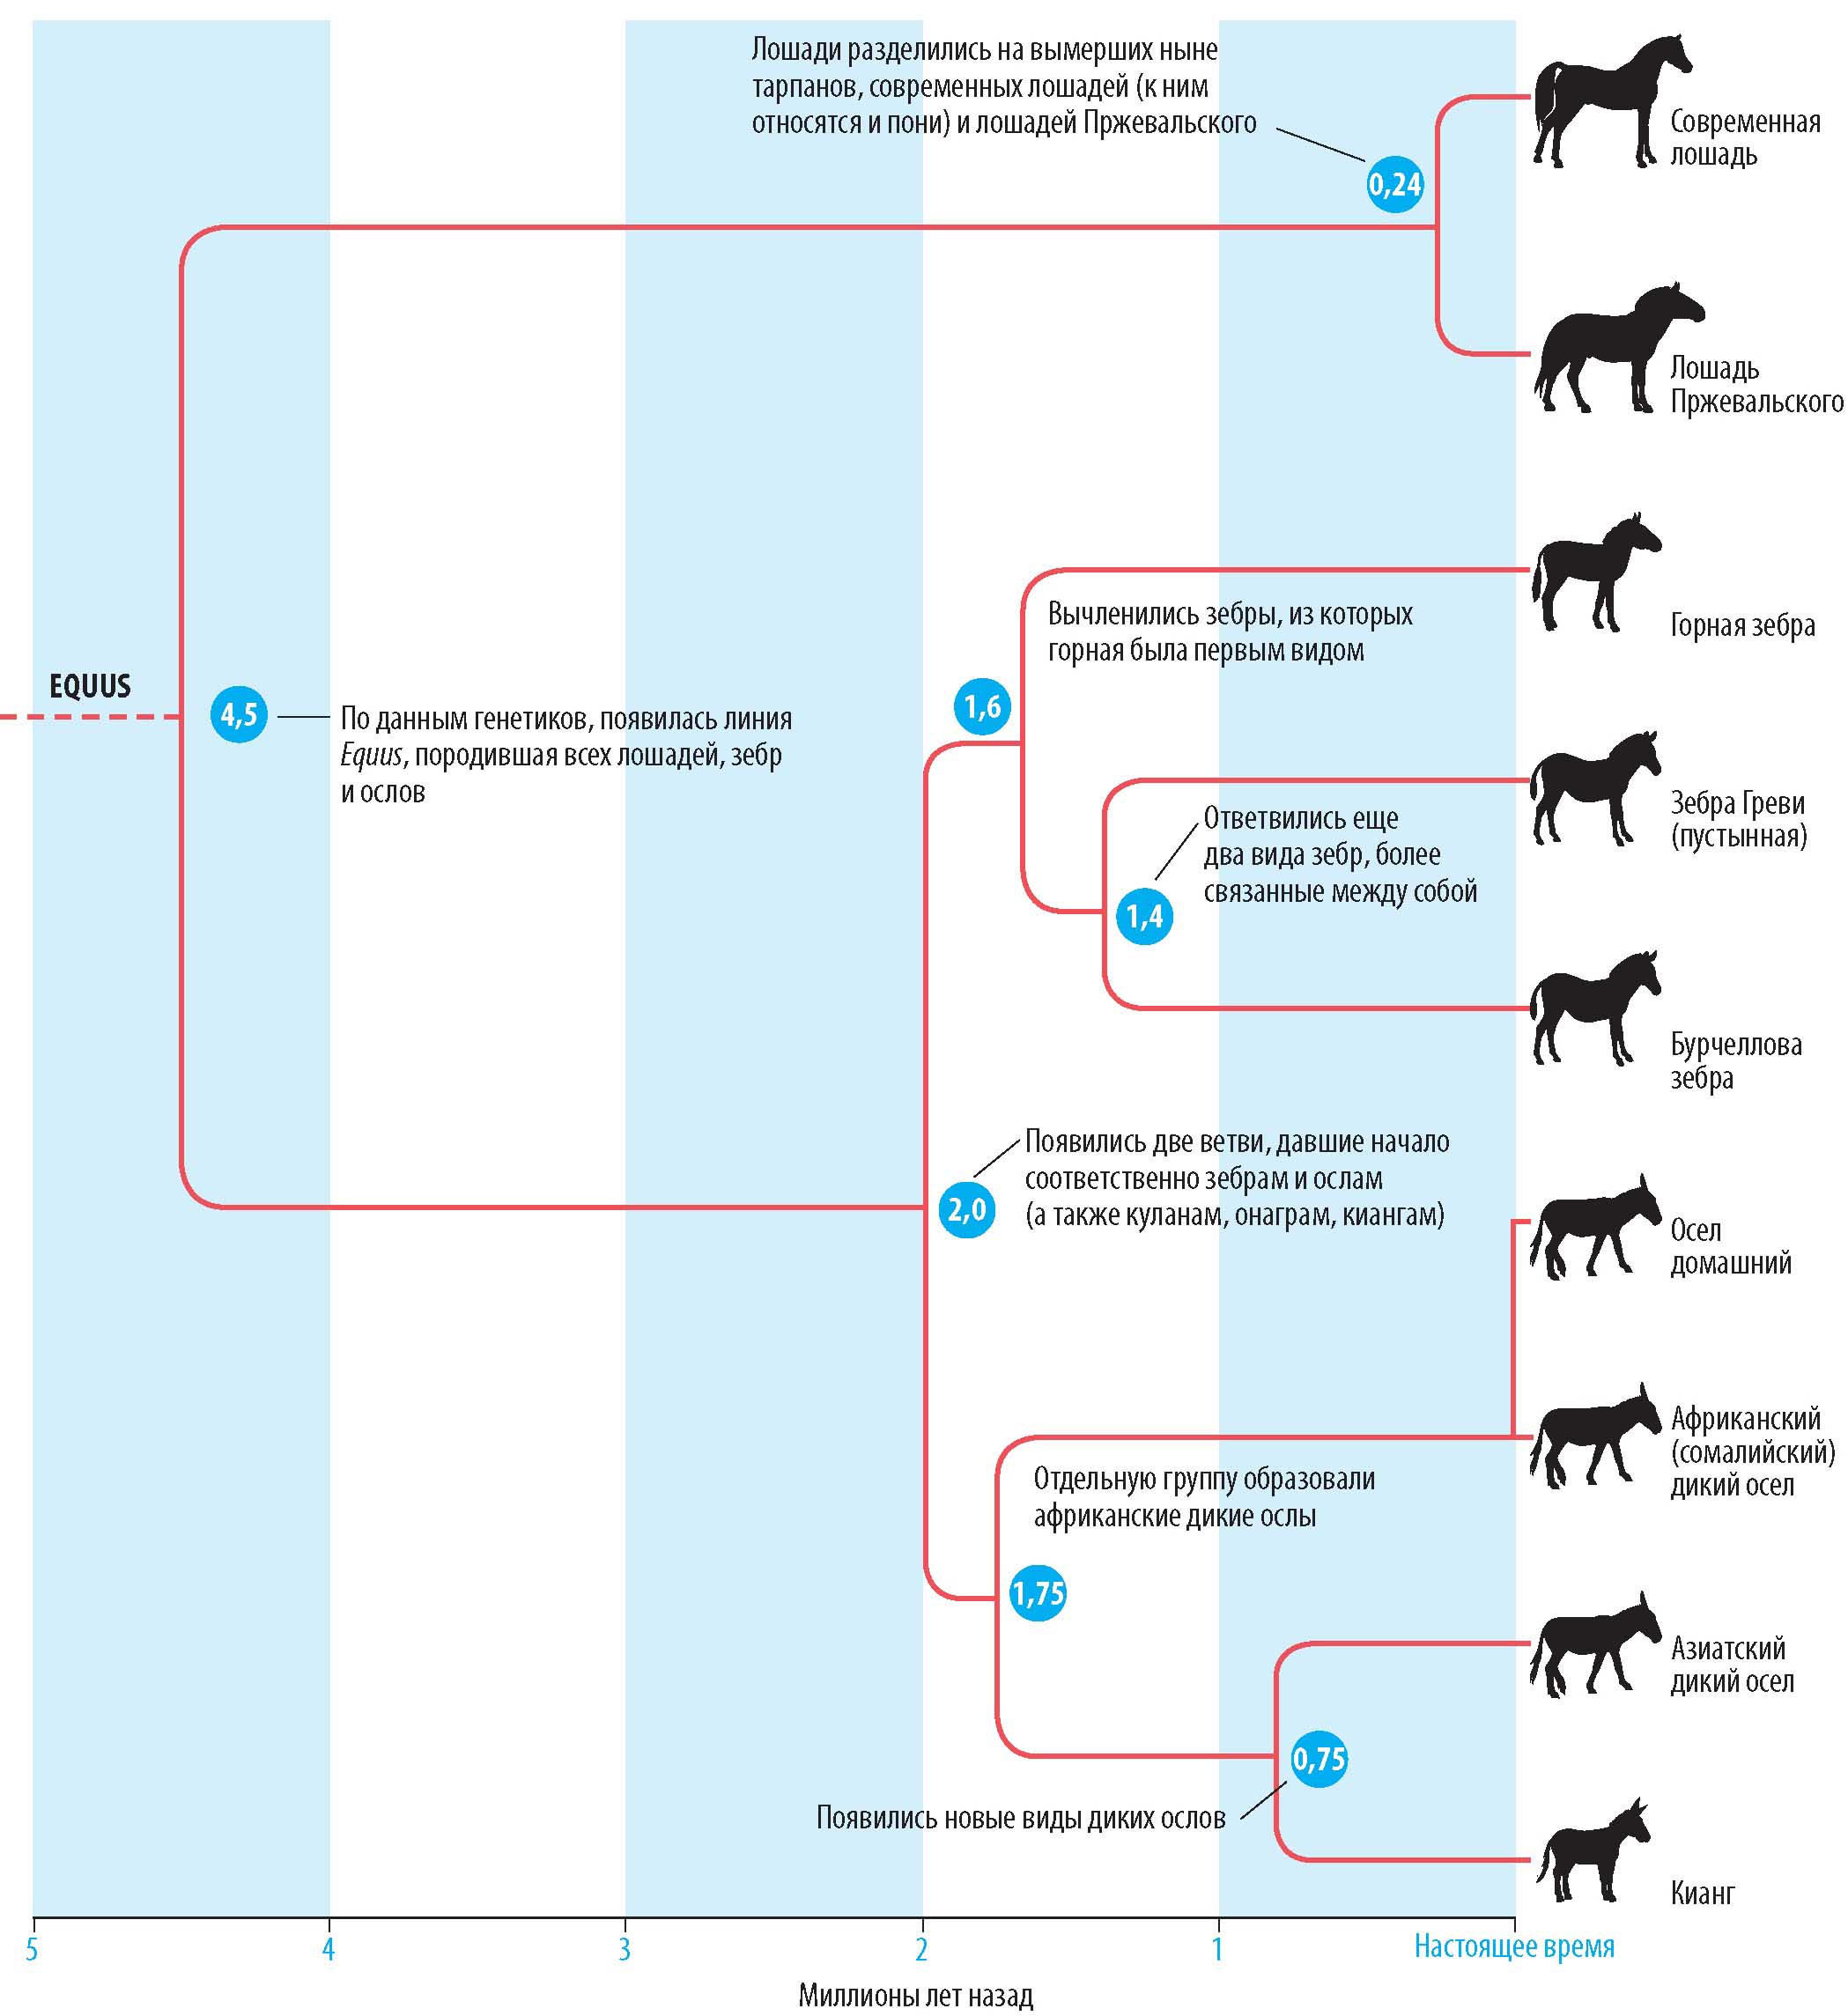 Схема показывает родственные отношения ныне живущих представителей семейства лошадиных. Ниже со схемой совмещена временная шкала (в миллионах лет назад), чтобы показать последовательность дифференциации представителей семейства лошадиных.
